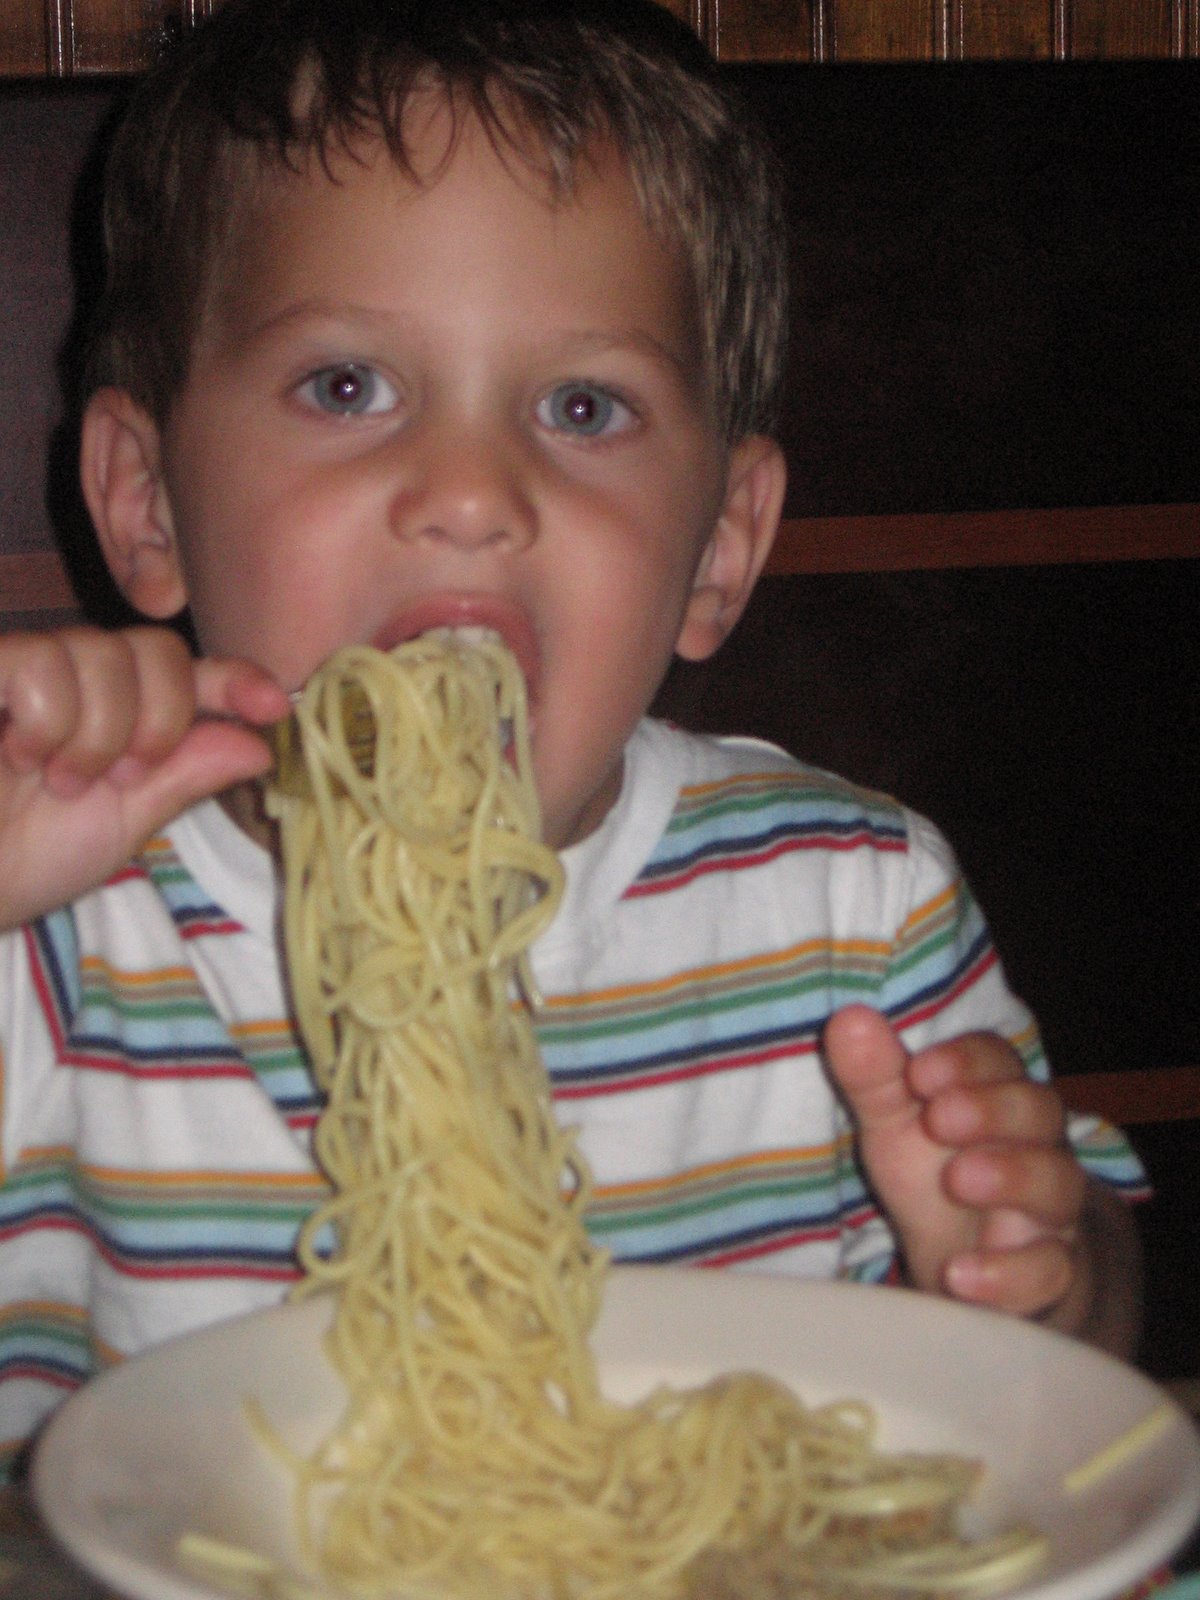 [carter+loves+noodles.jpg]